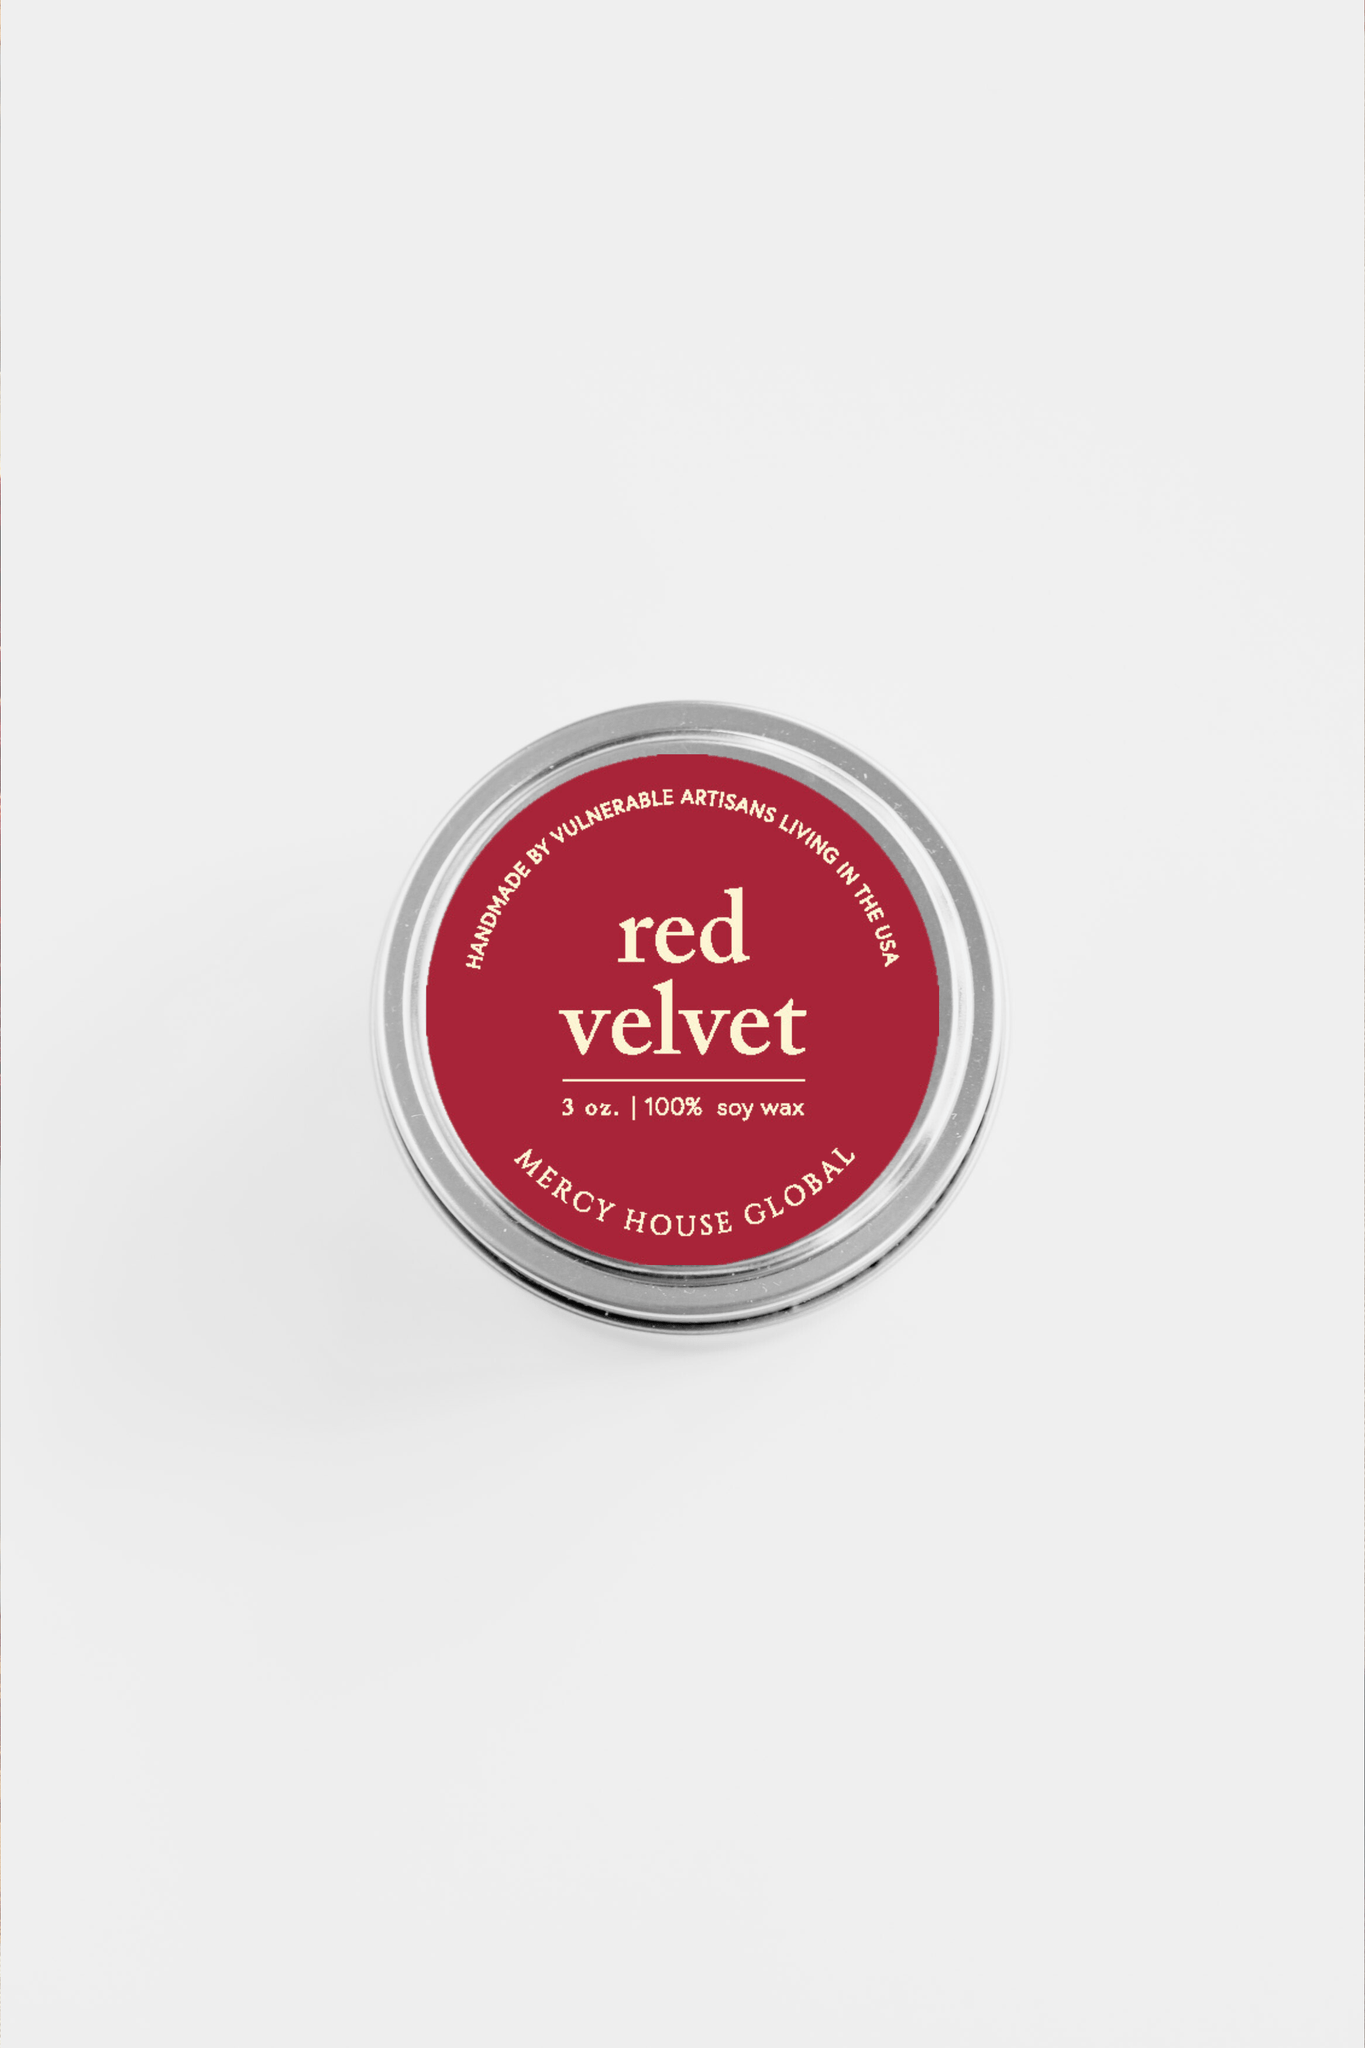 Red Velvet Candle | 3oz Silver Tin - Recetas Fair Trade